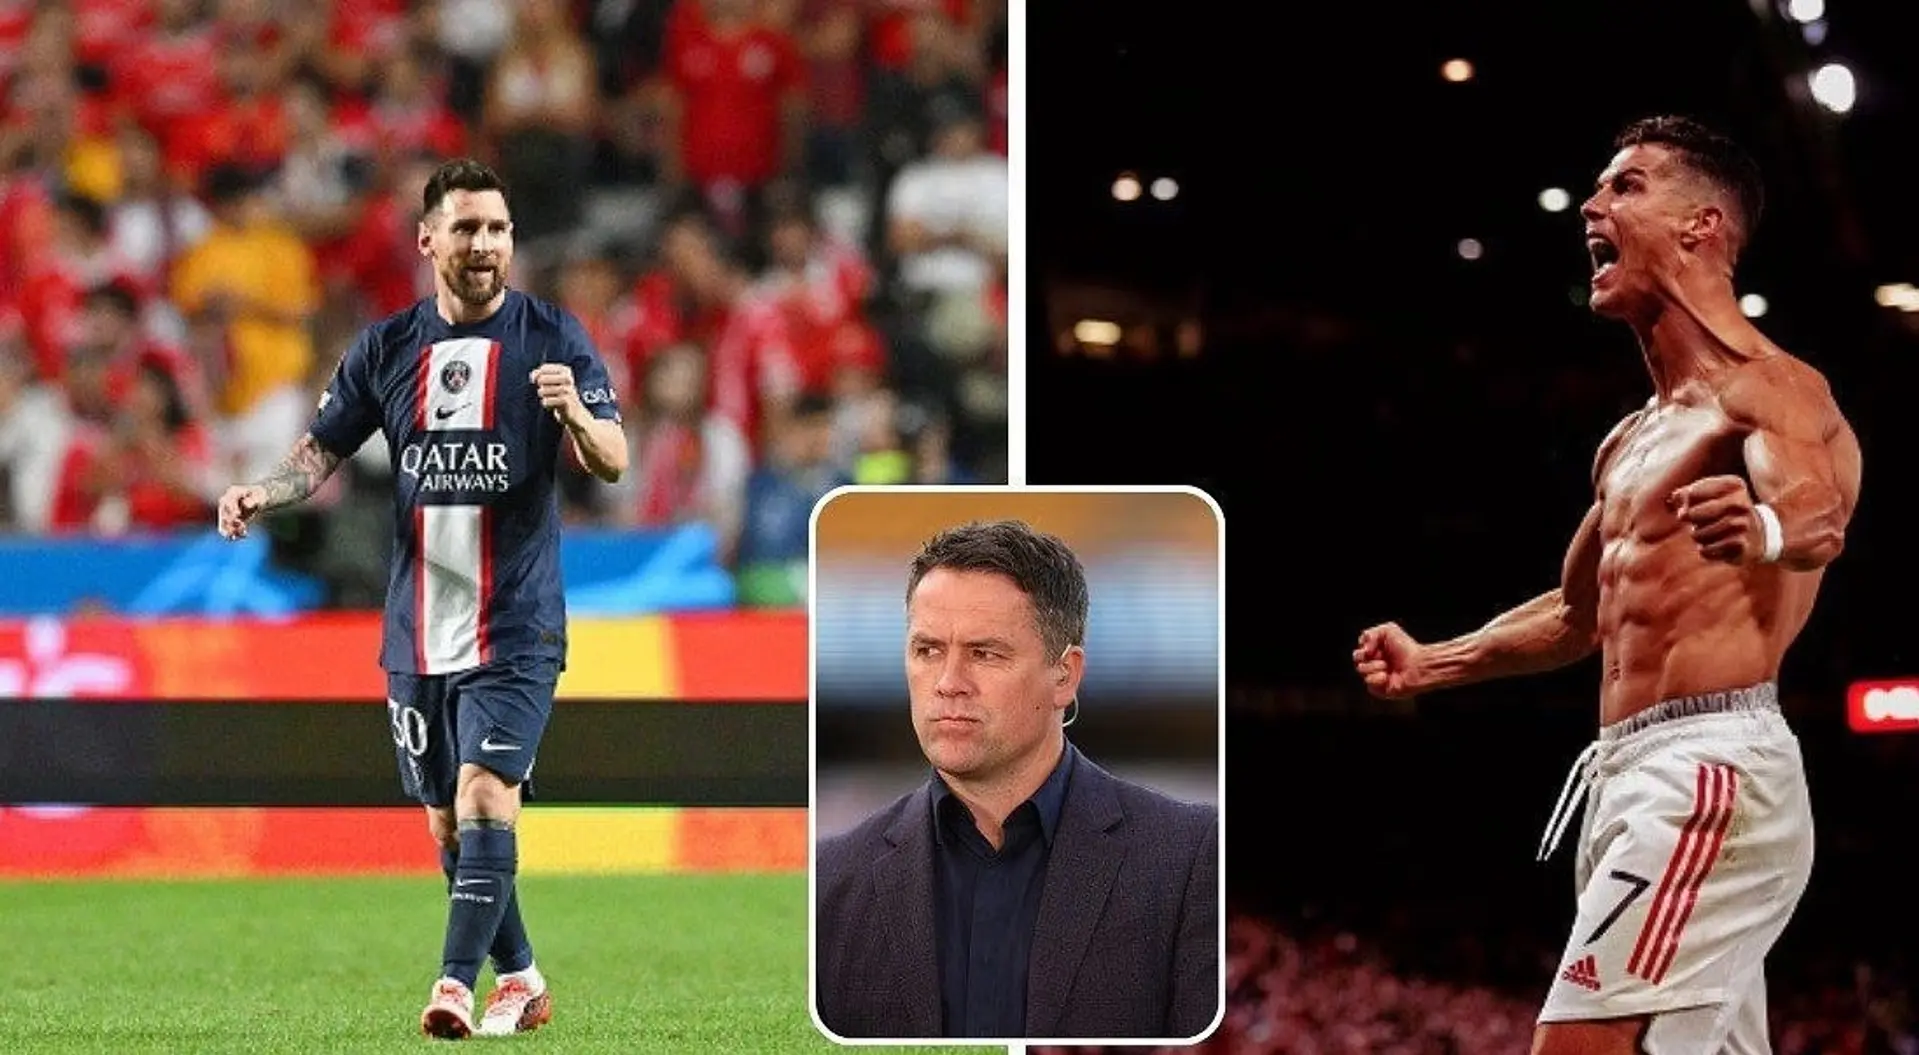 "Er ist ein vielseitigerer Spieler": Michael Owen vergleicht Messi mit Ronaldo 